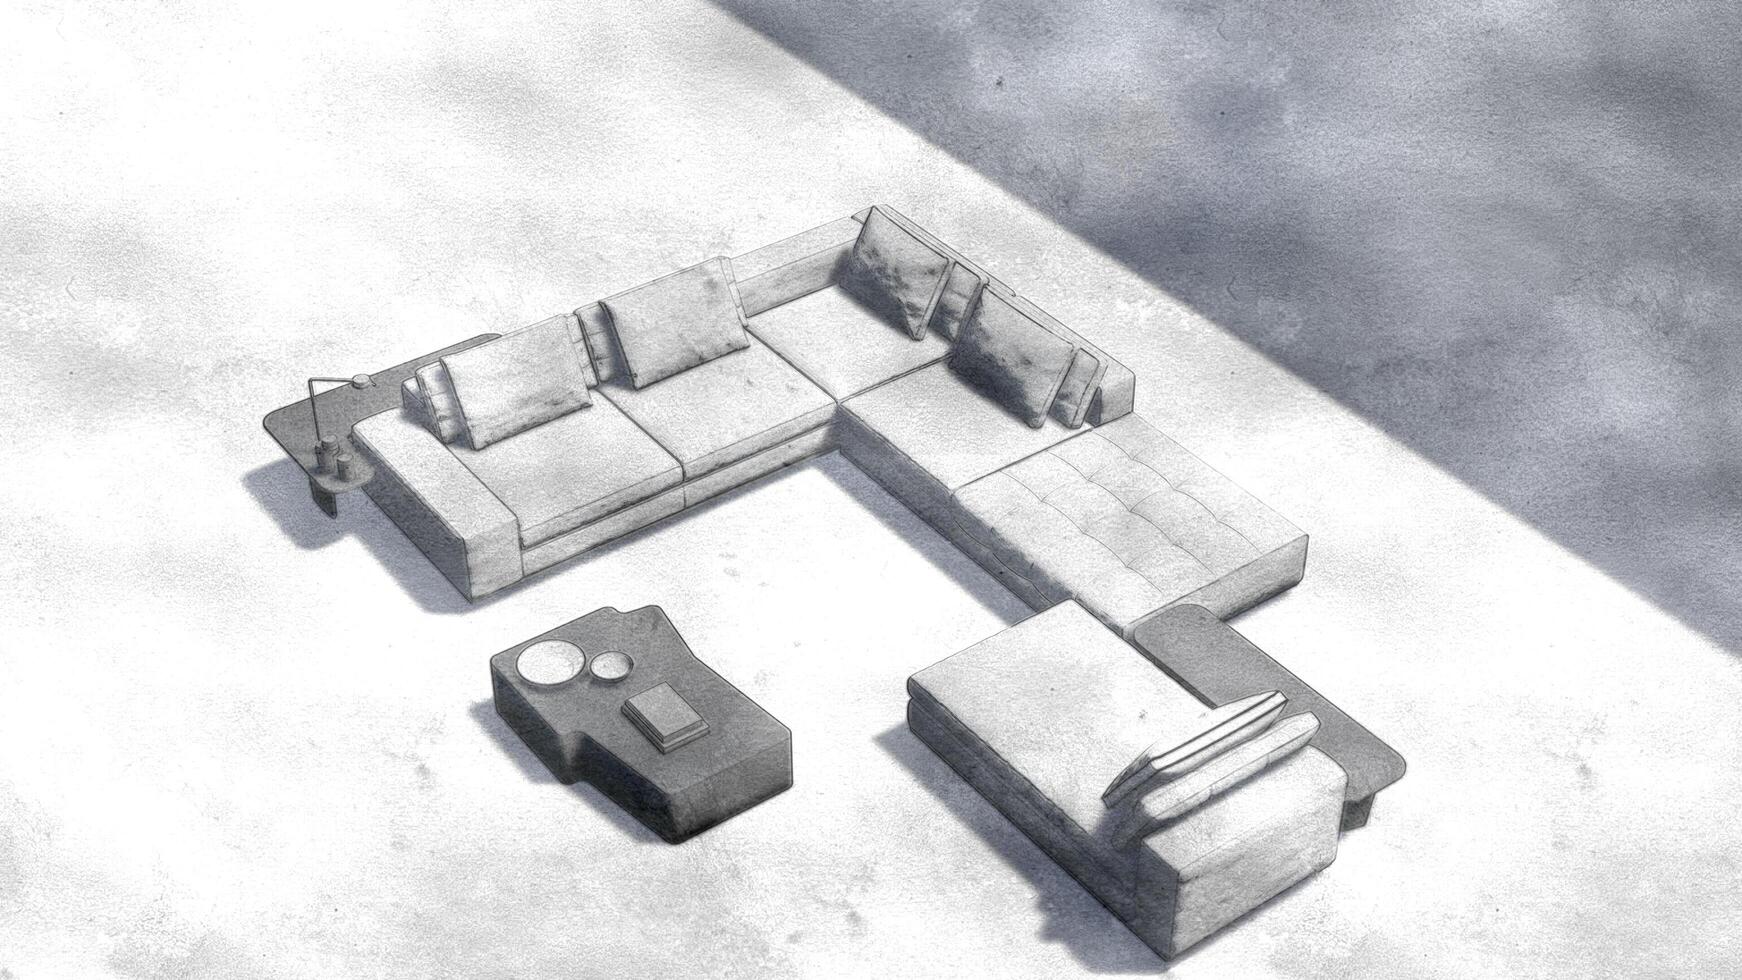 en vit soffa och en kaffe tabell är visad i en rum foto